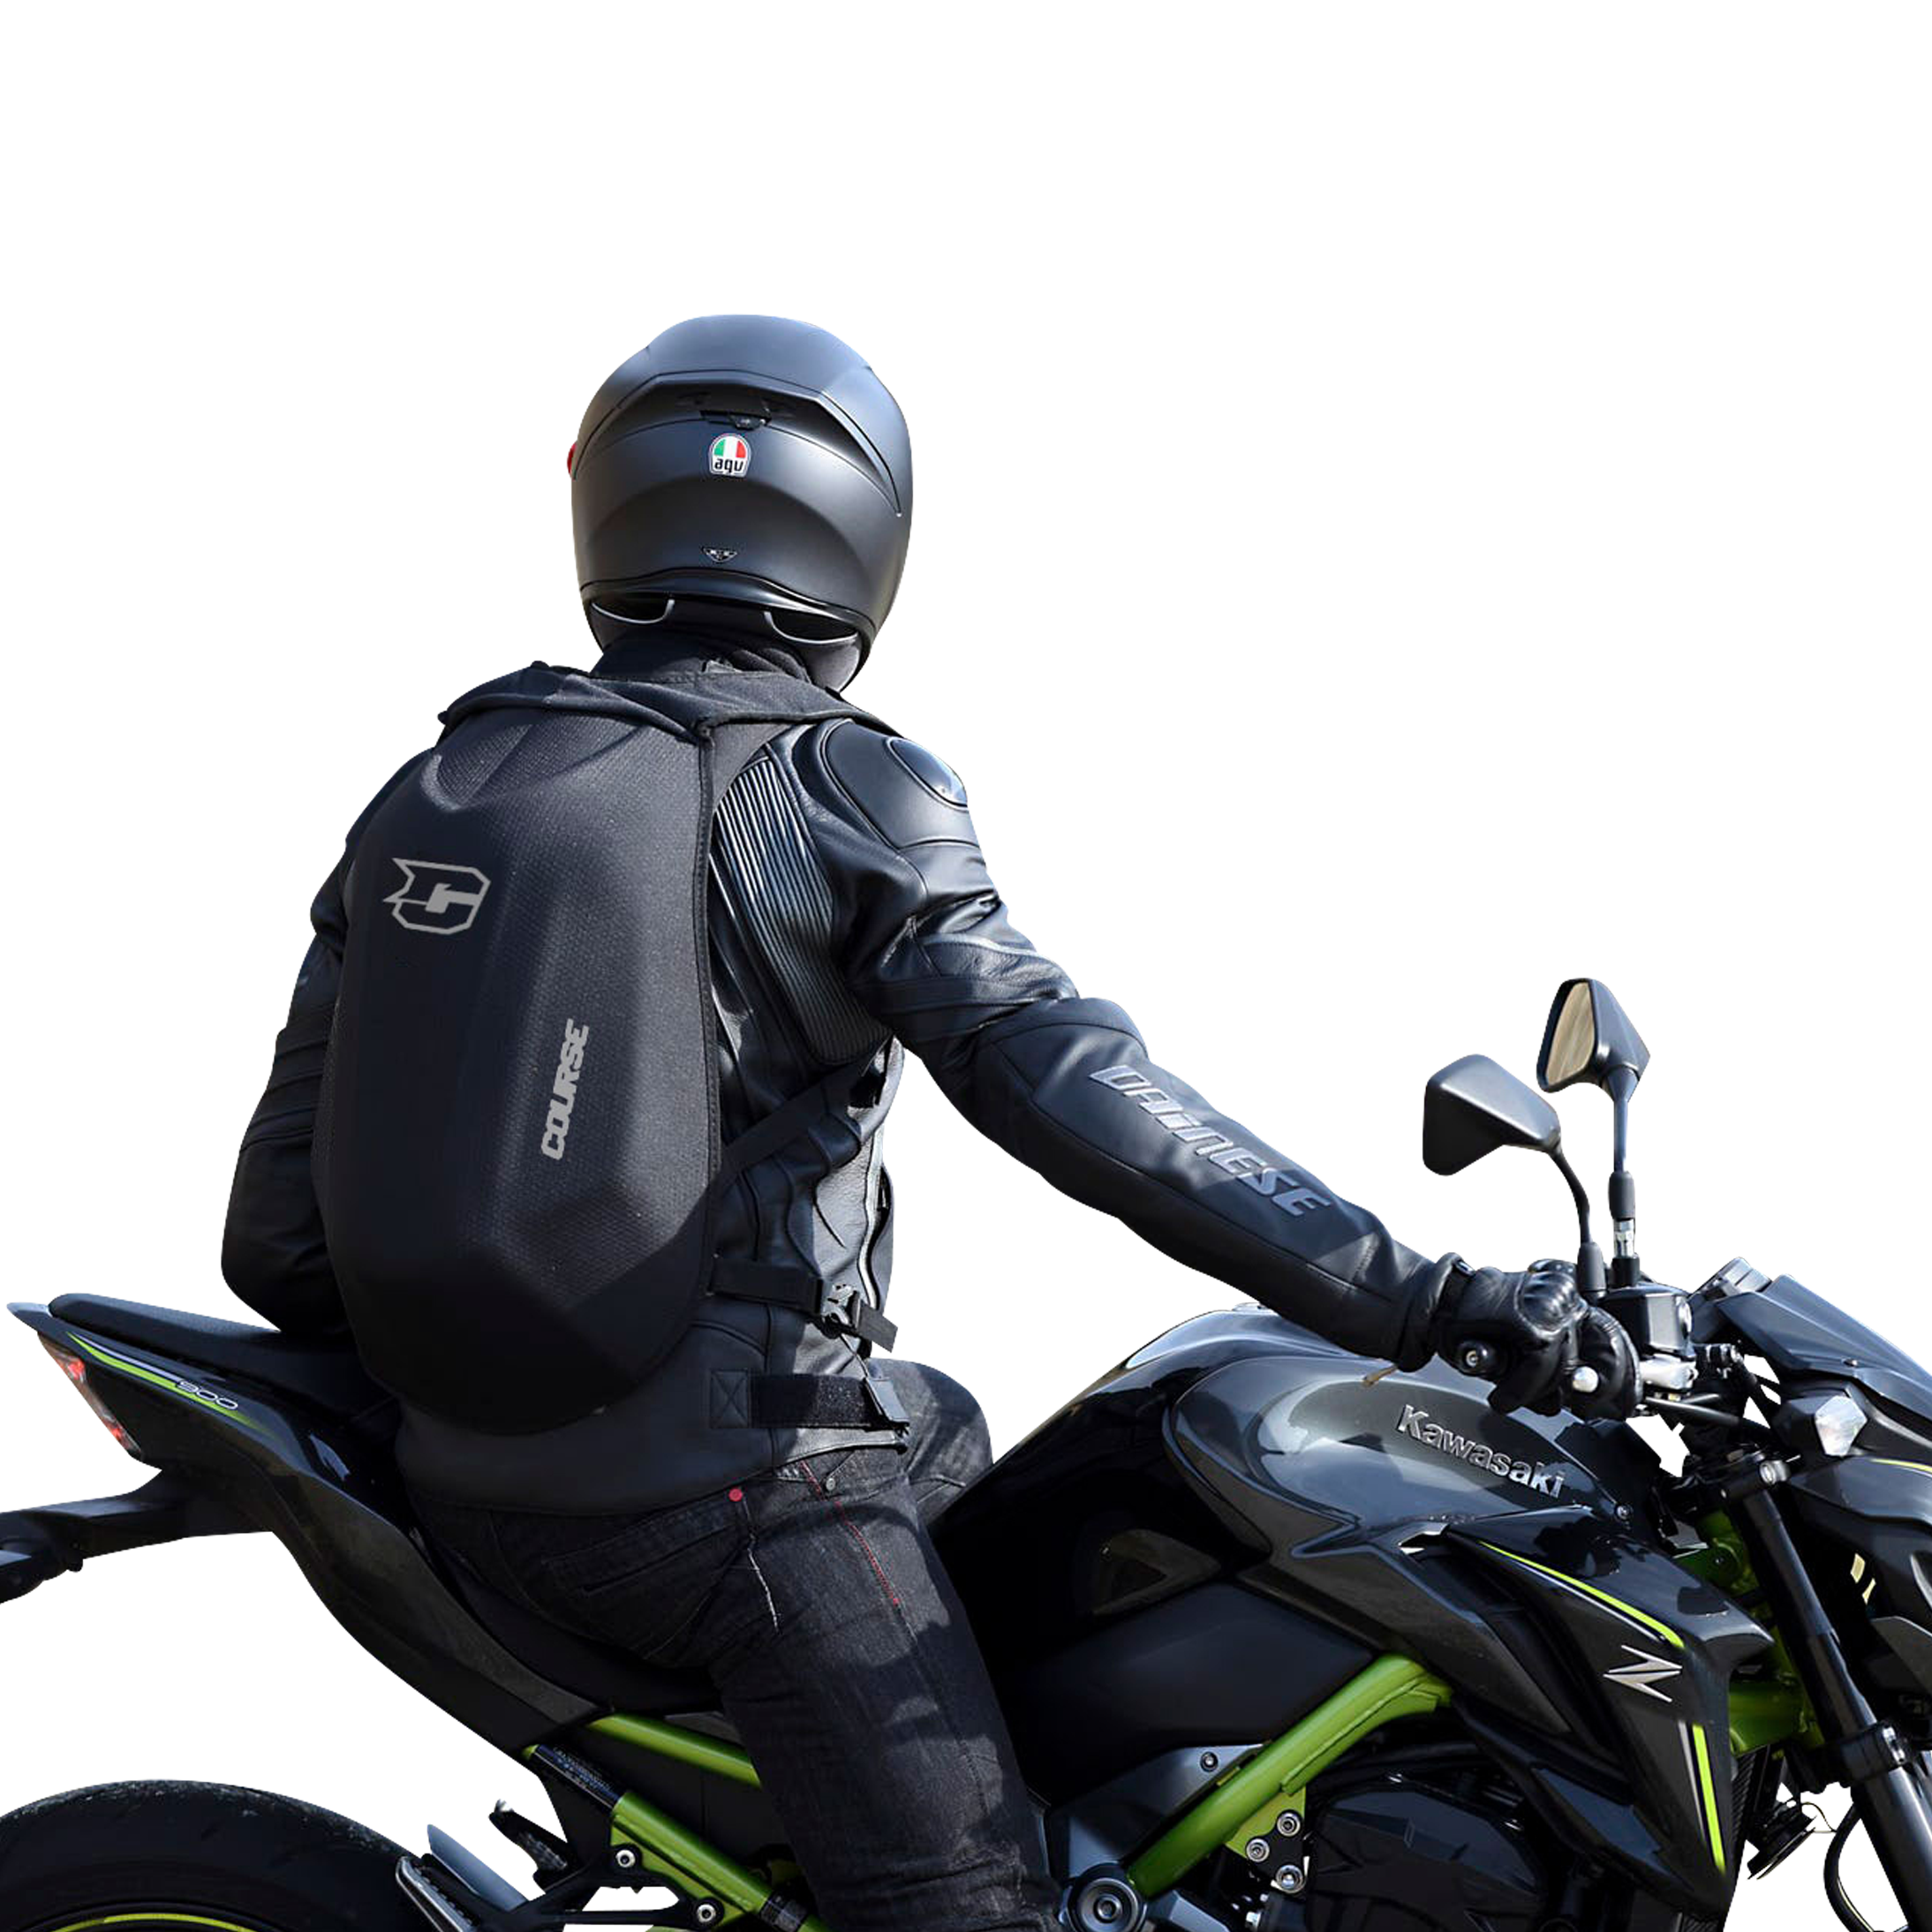 Zaino Moto XLMOTO Slipstream Carbon Look - Adesso 70% di risparmio